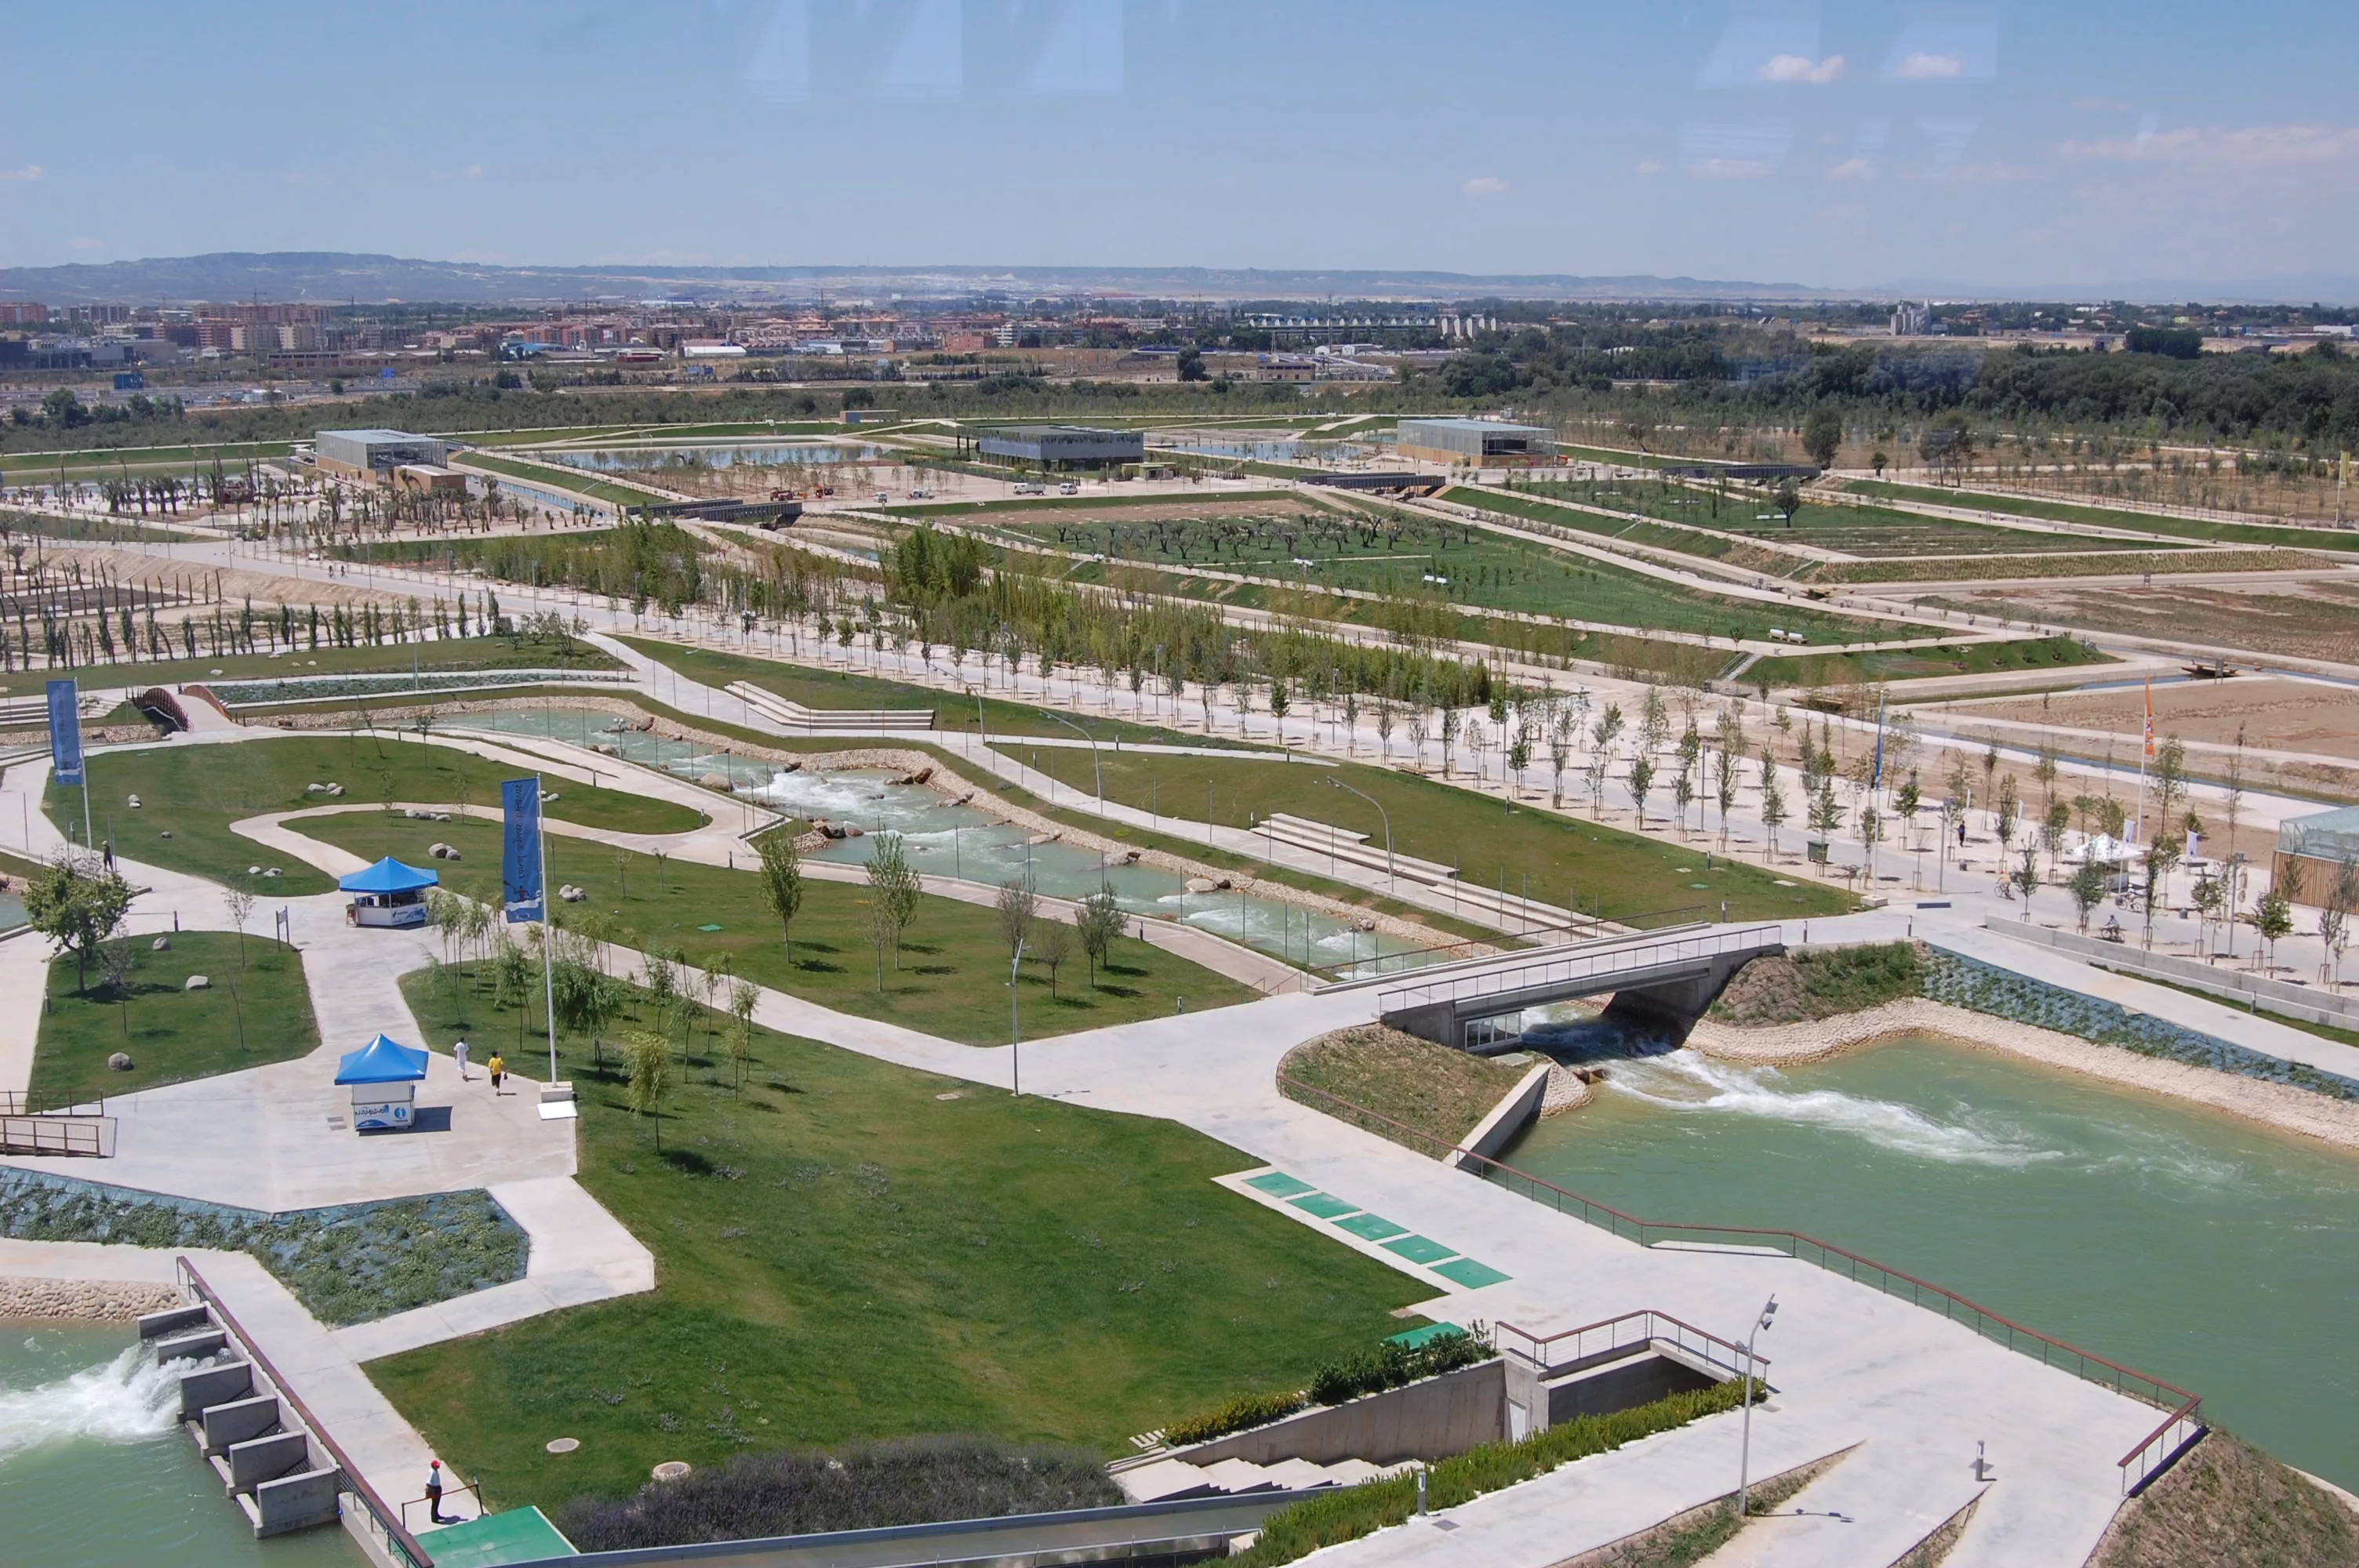 Agua Luis Bunuel Park in Spain, Europe | Parks - Rated 3.6